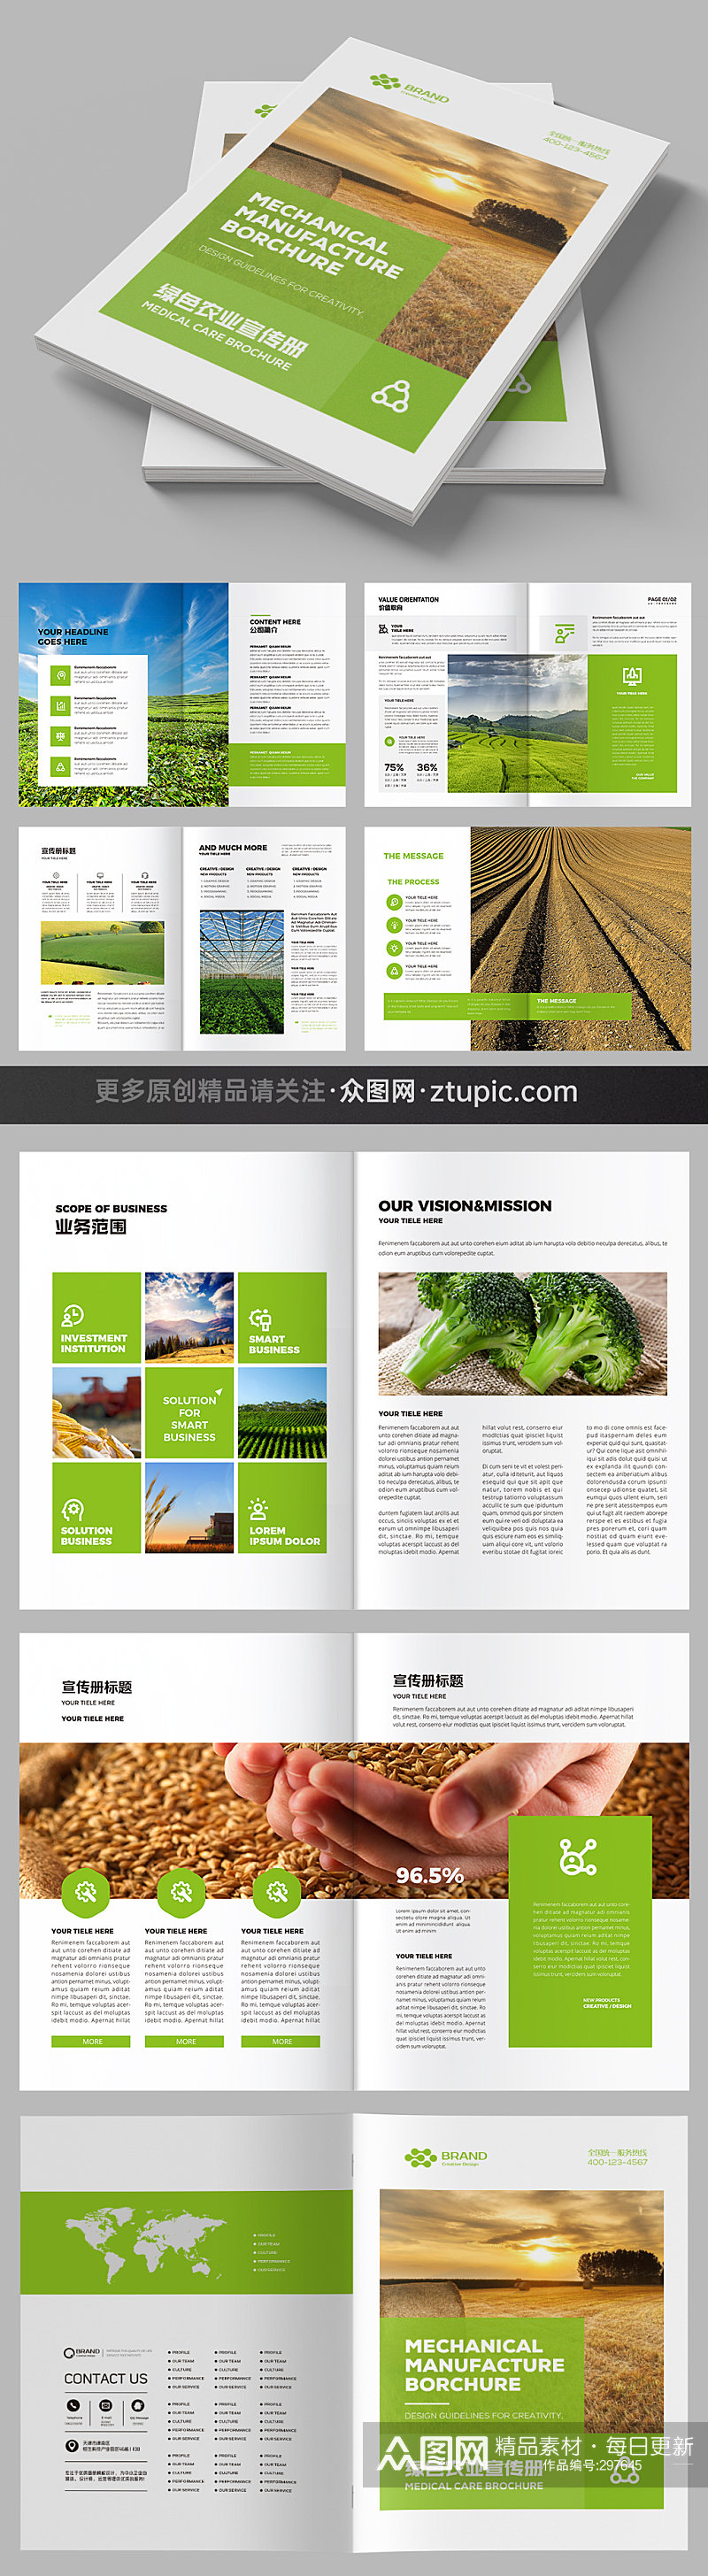 绿色食品农业招商宣传册素材